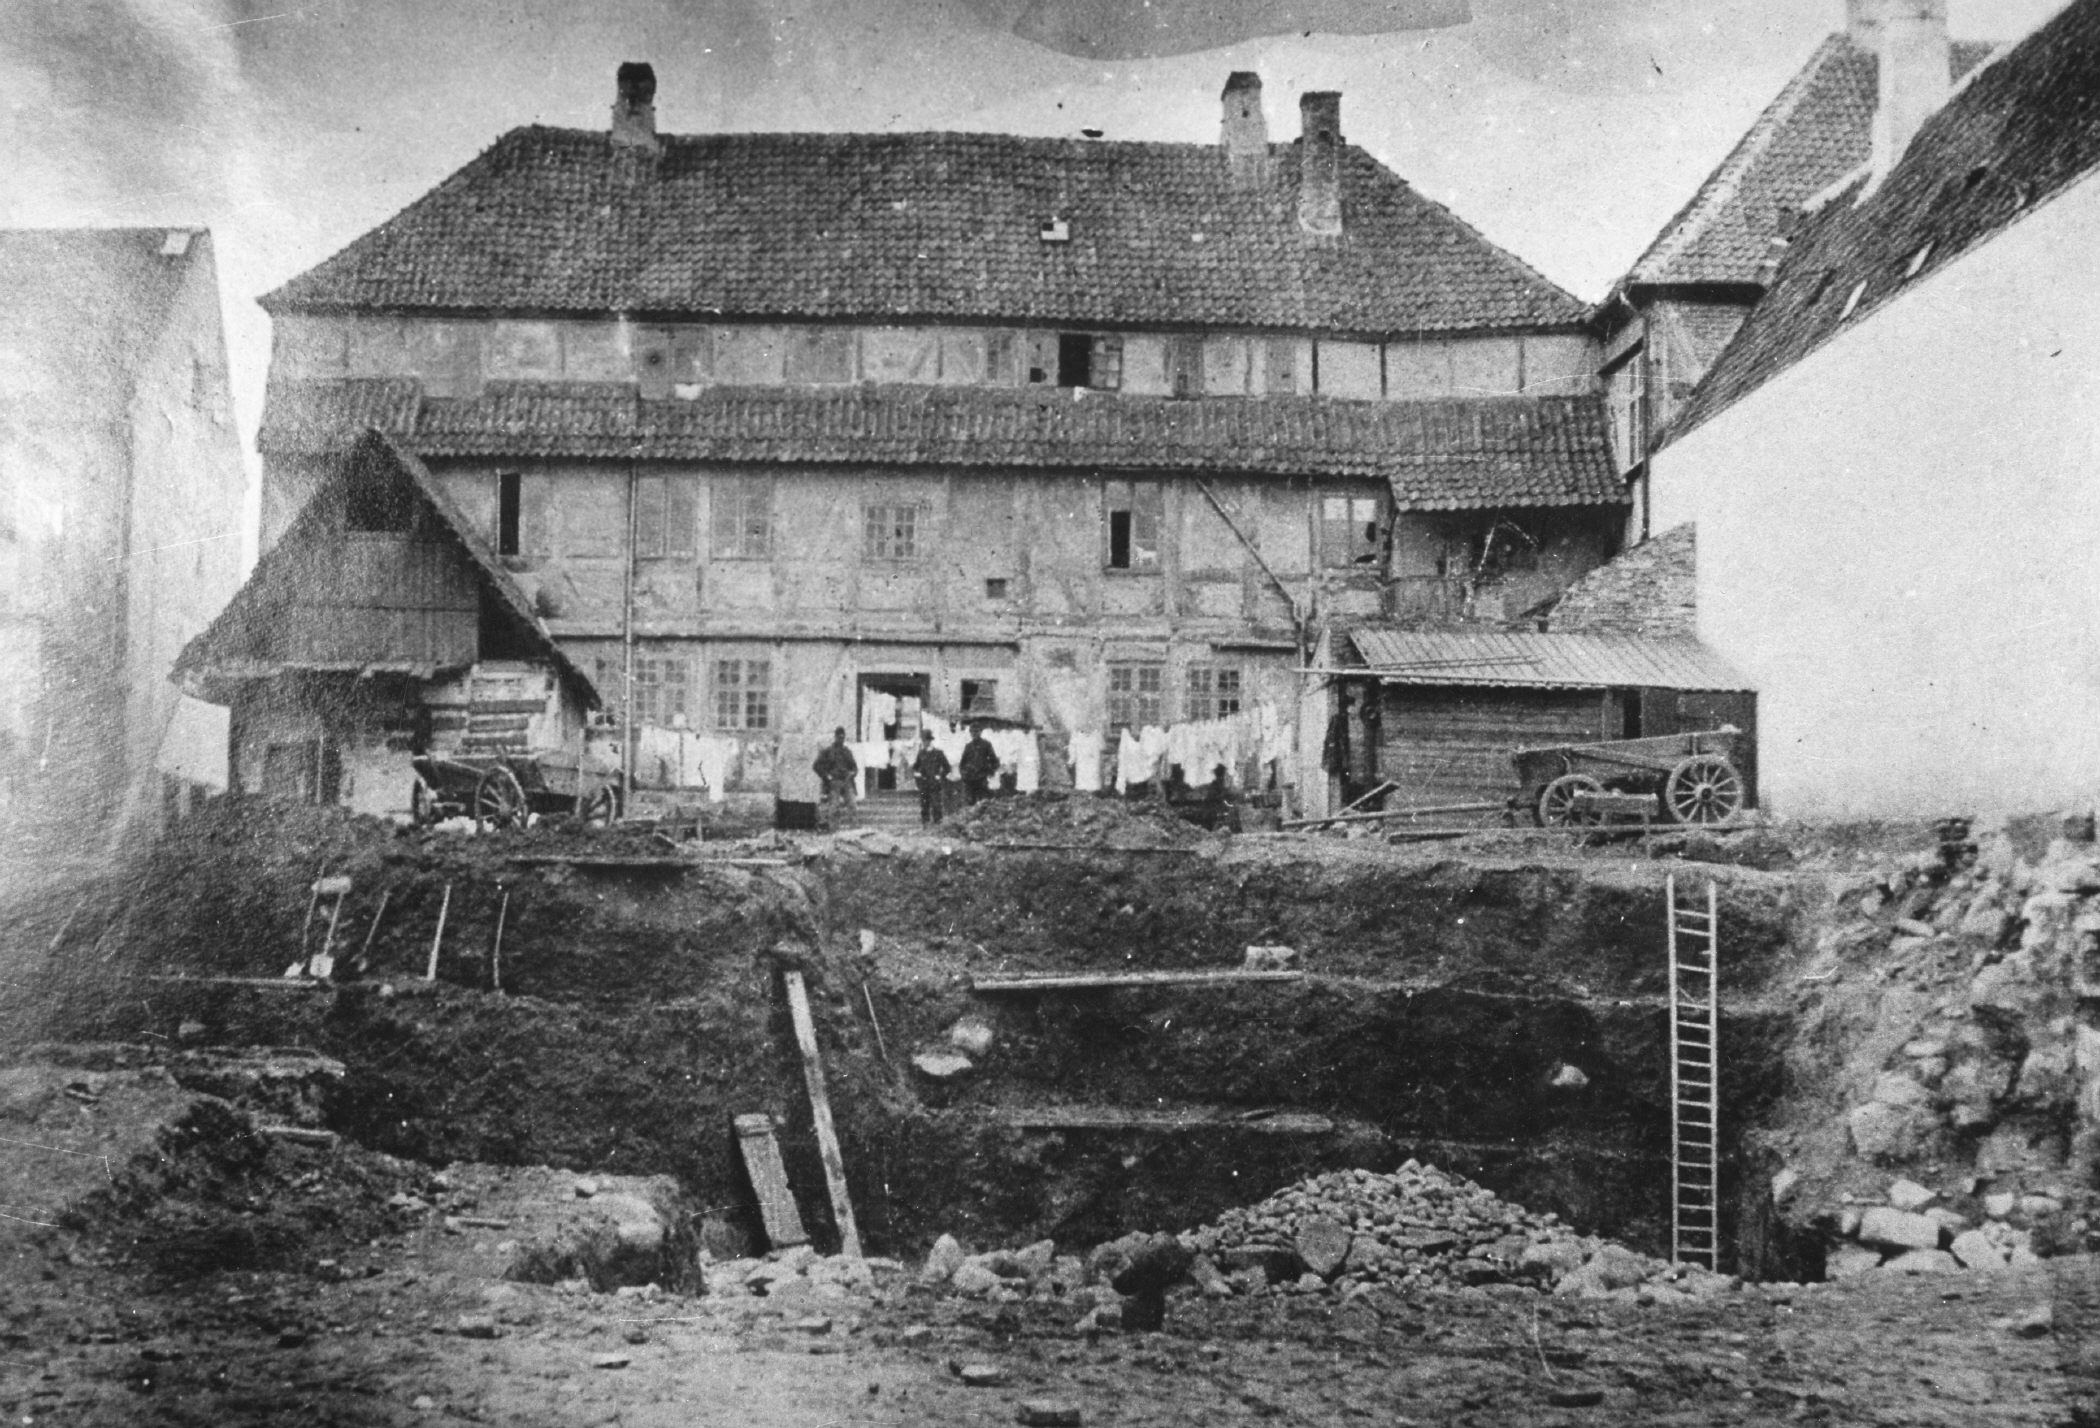 Arkæologisk udgravning ved Industriforeningens bagside (Albani Torv). Efter gammelt fotografi i Nationalmuseet (1915). Billedet illustrerer den massive kulturlagsdannelse, der har været – og nogle steder stadig er – i det centrale Odense.